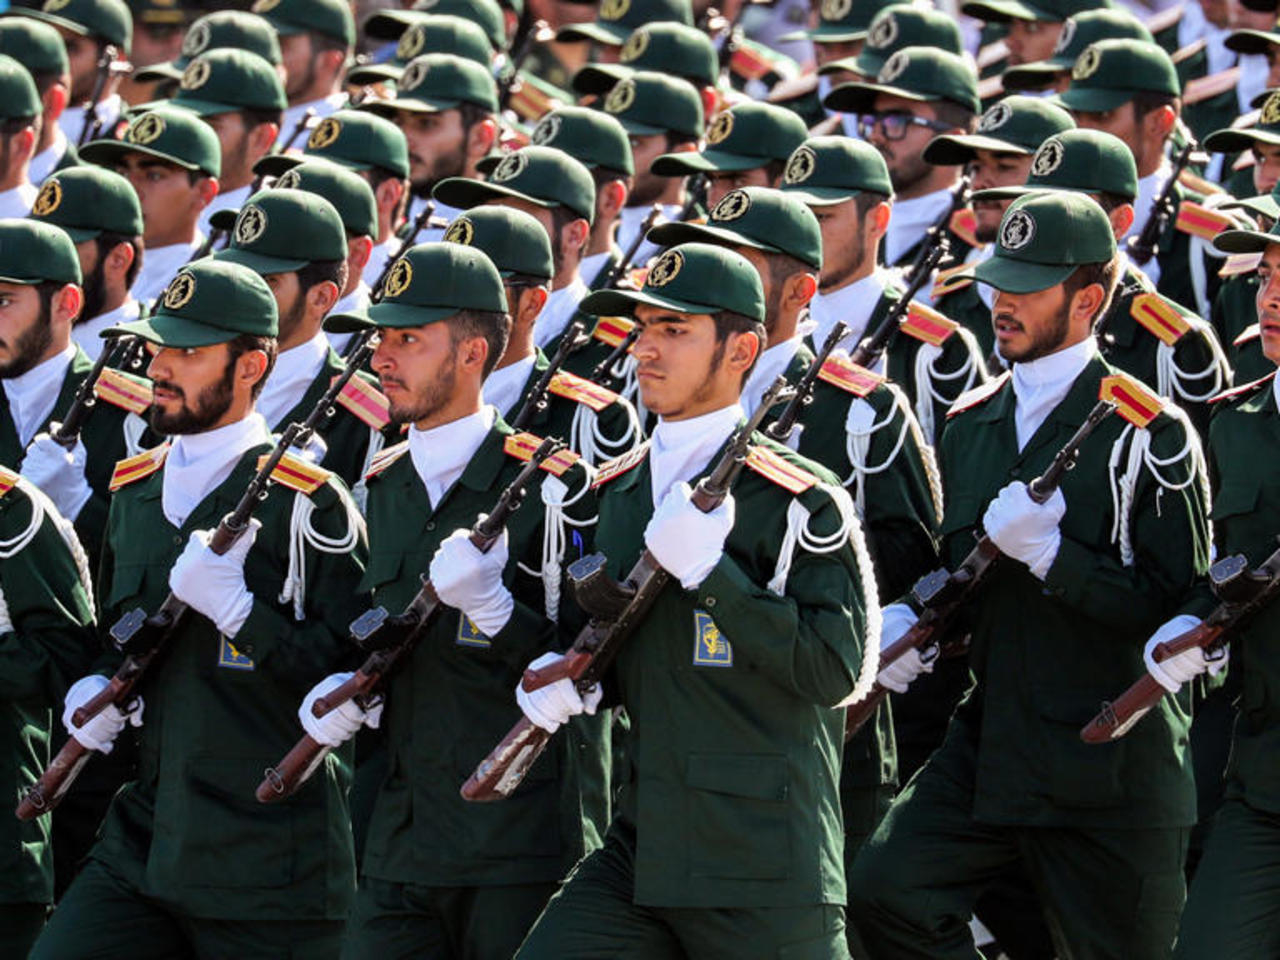 مع الارتفاع المتزايد للإصابات بفيروس "كورونا".. مسؤول إيراني يقترح فرض حكم عسكري لمواجهته